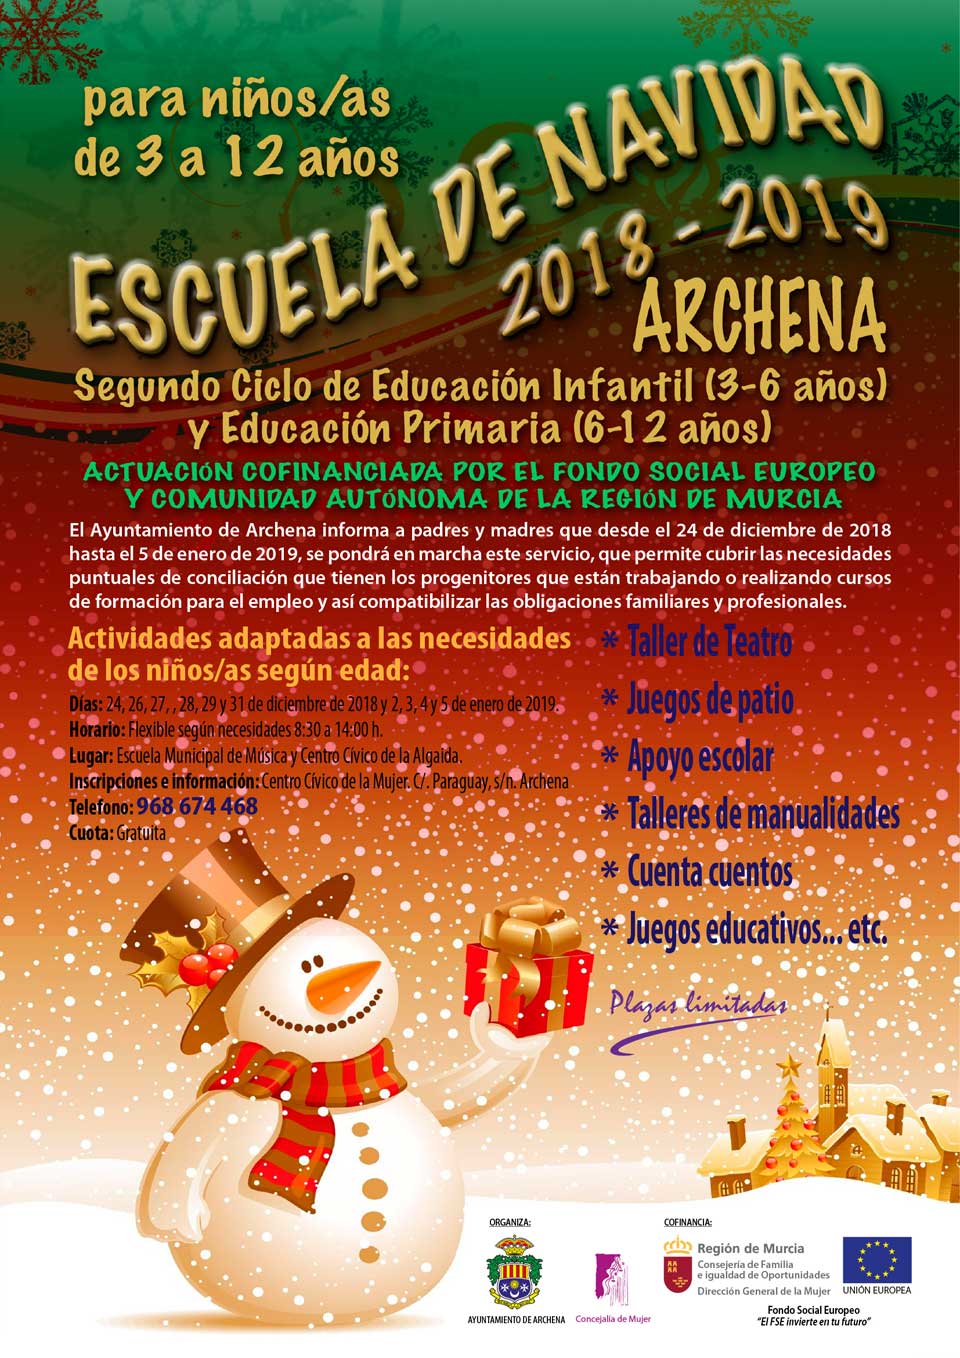 Escuela Navidad 2018-19 Archena